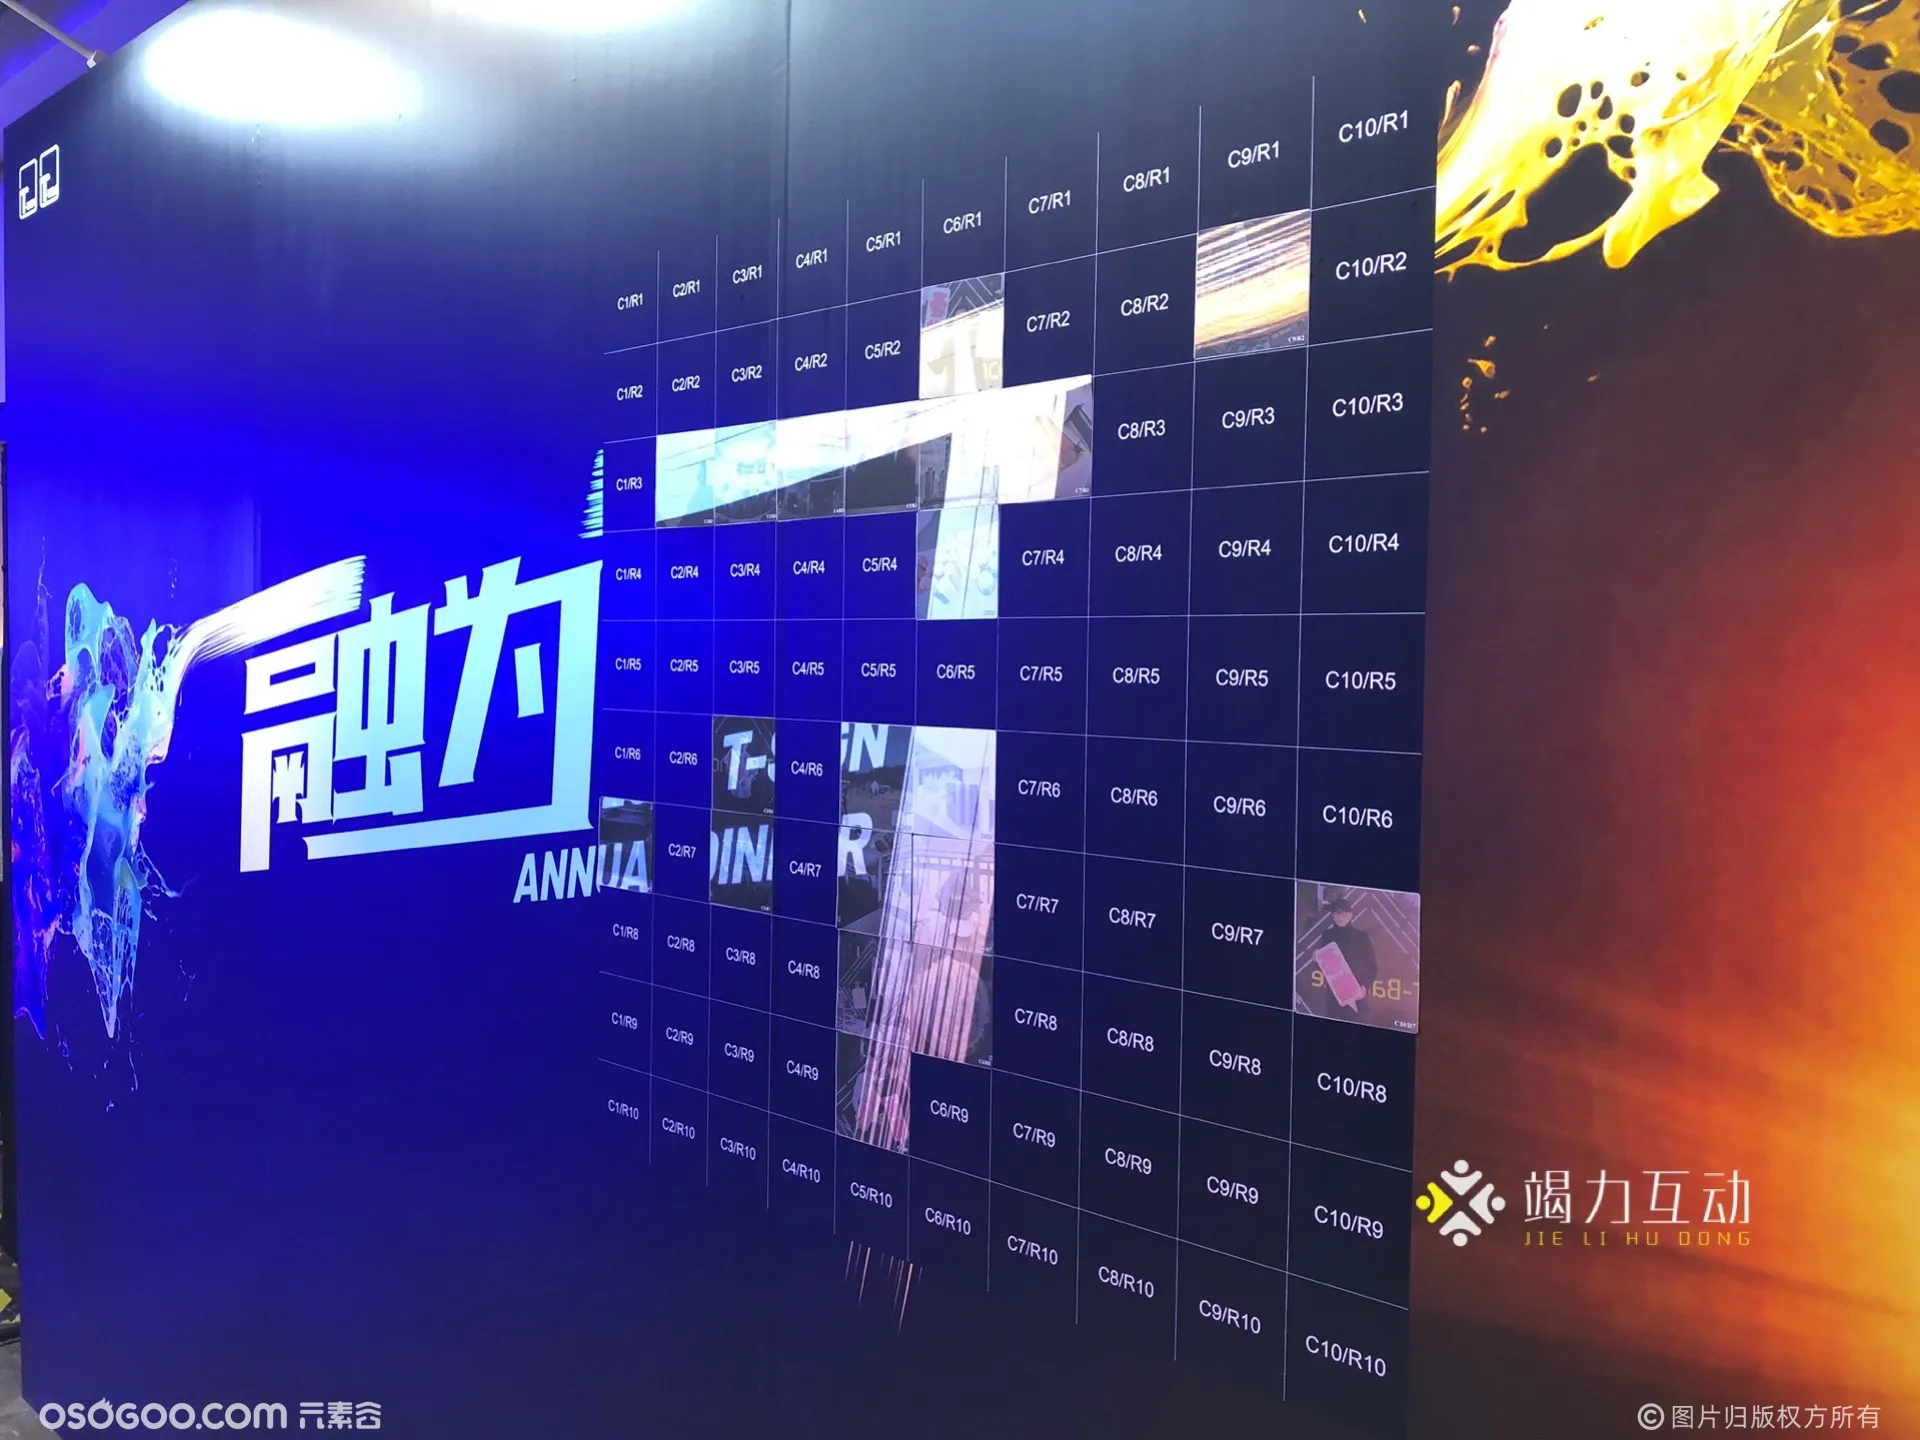 上海站企业年会马赛克拼图签到互动装置案例